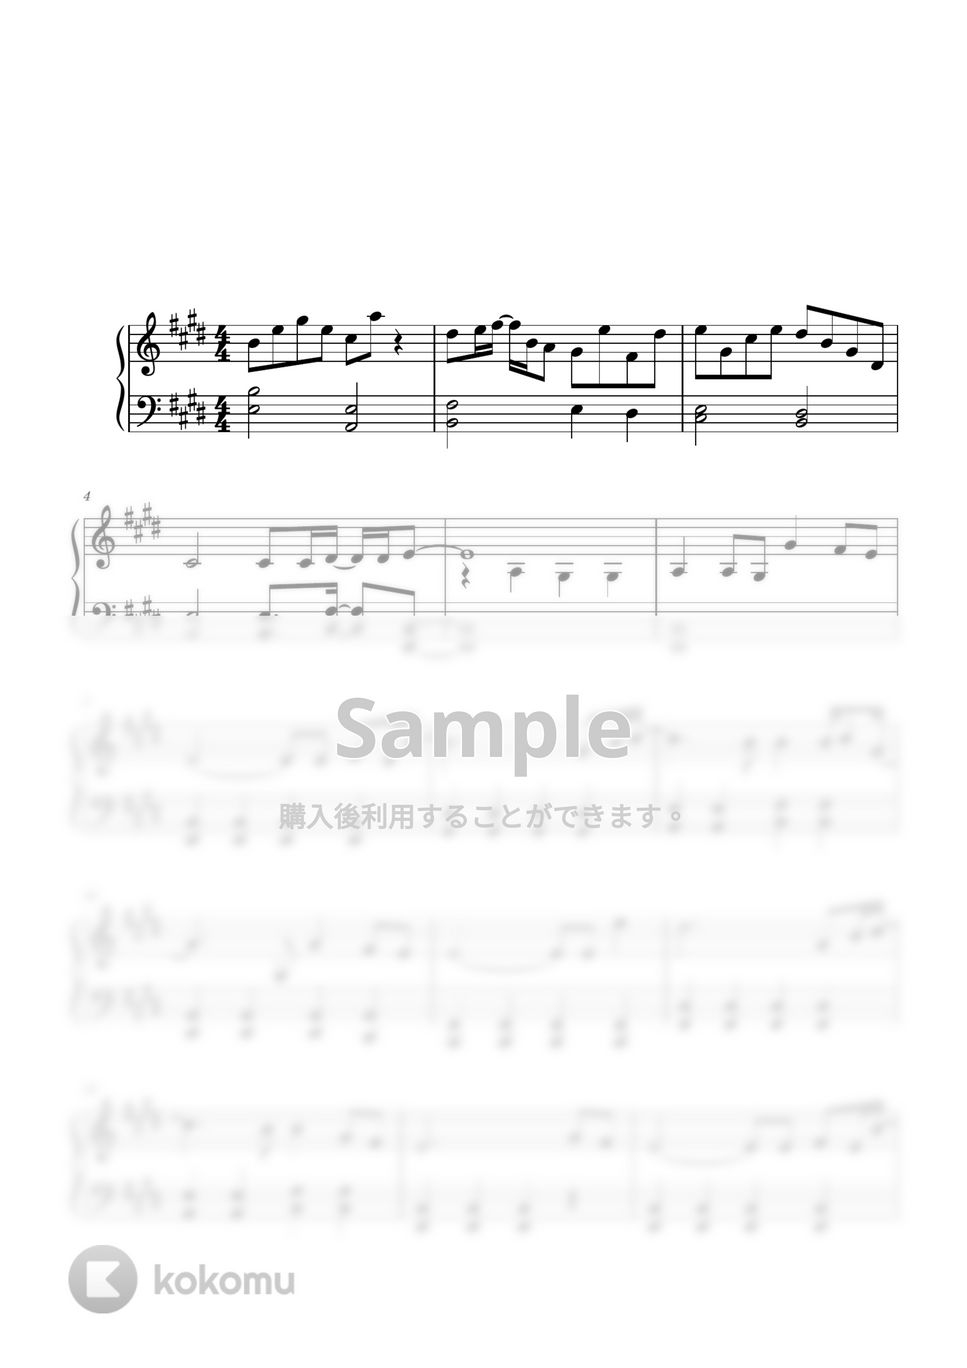 ゆず - 栄光の架け橋 (ピアノ初級ソロ) by pianon